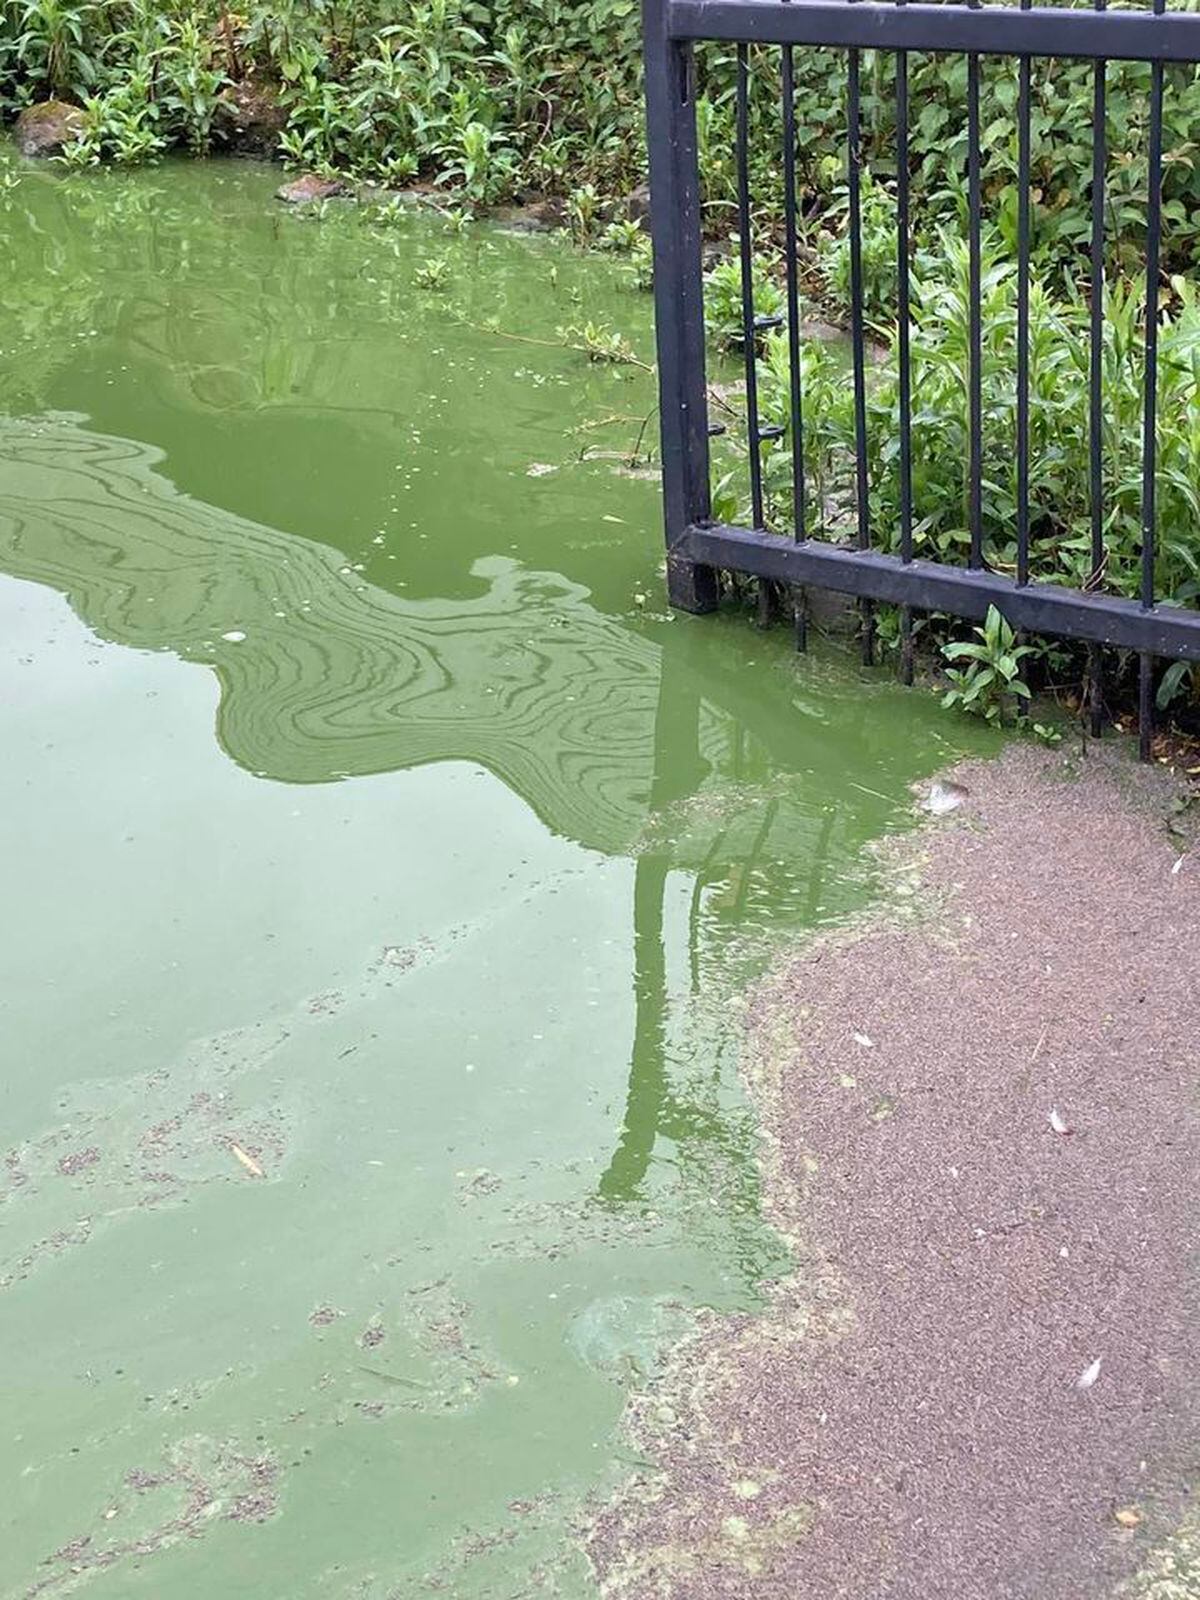 The green algae a fortnight ago 